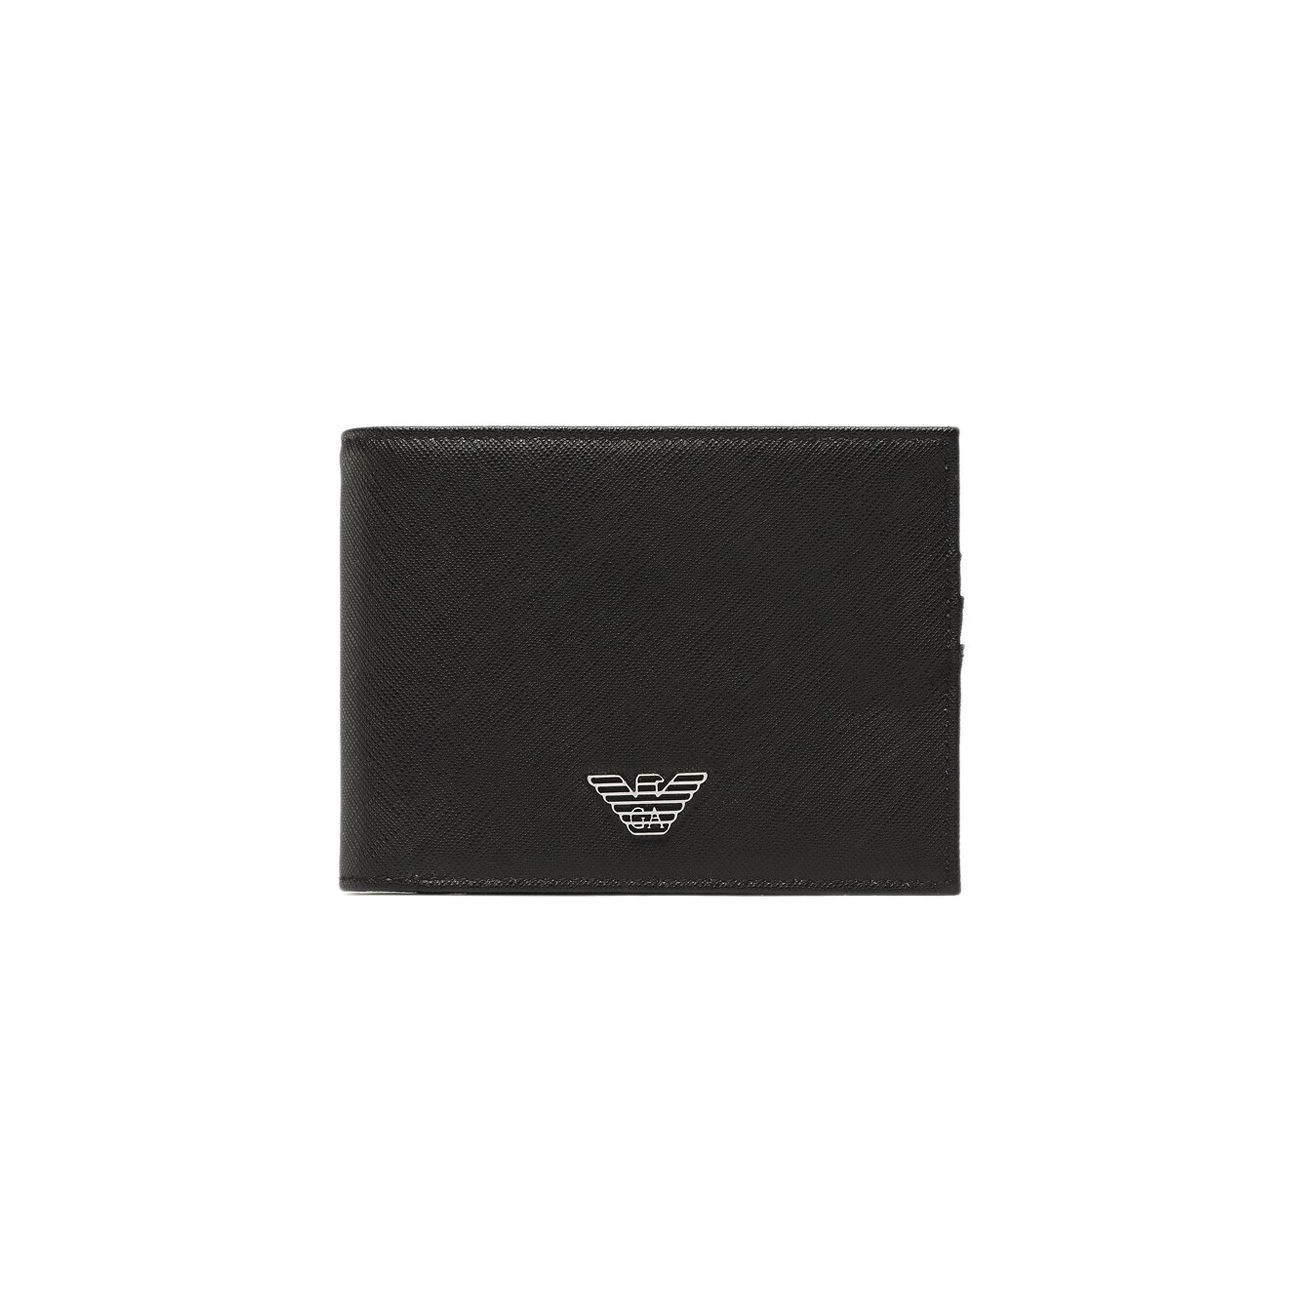 Tumbled leather wallet with wrap-around zip | EMPORIO ARMANI Man